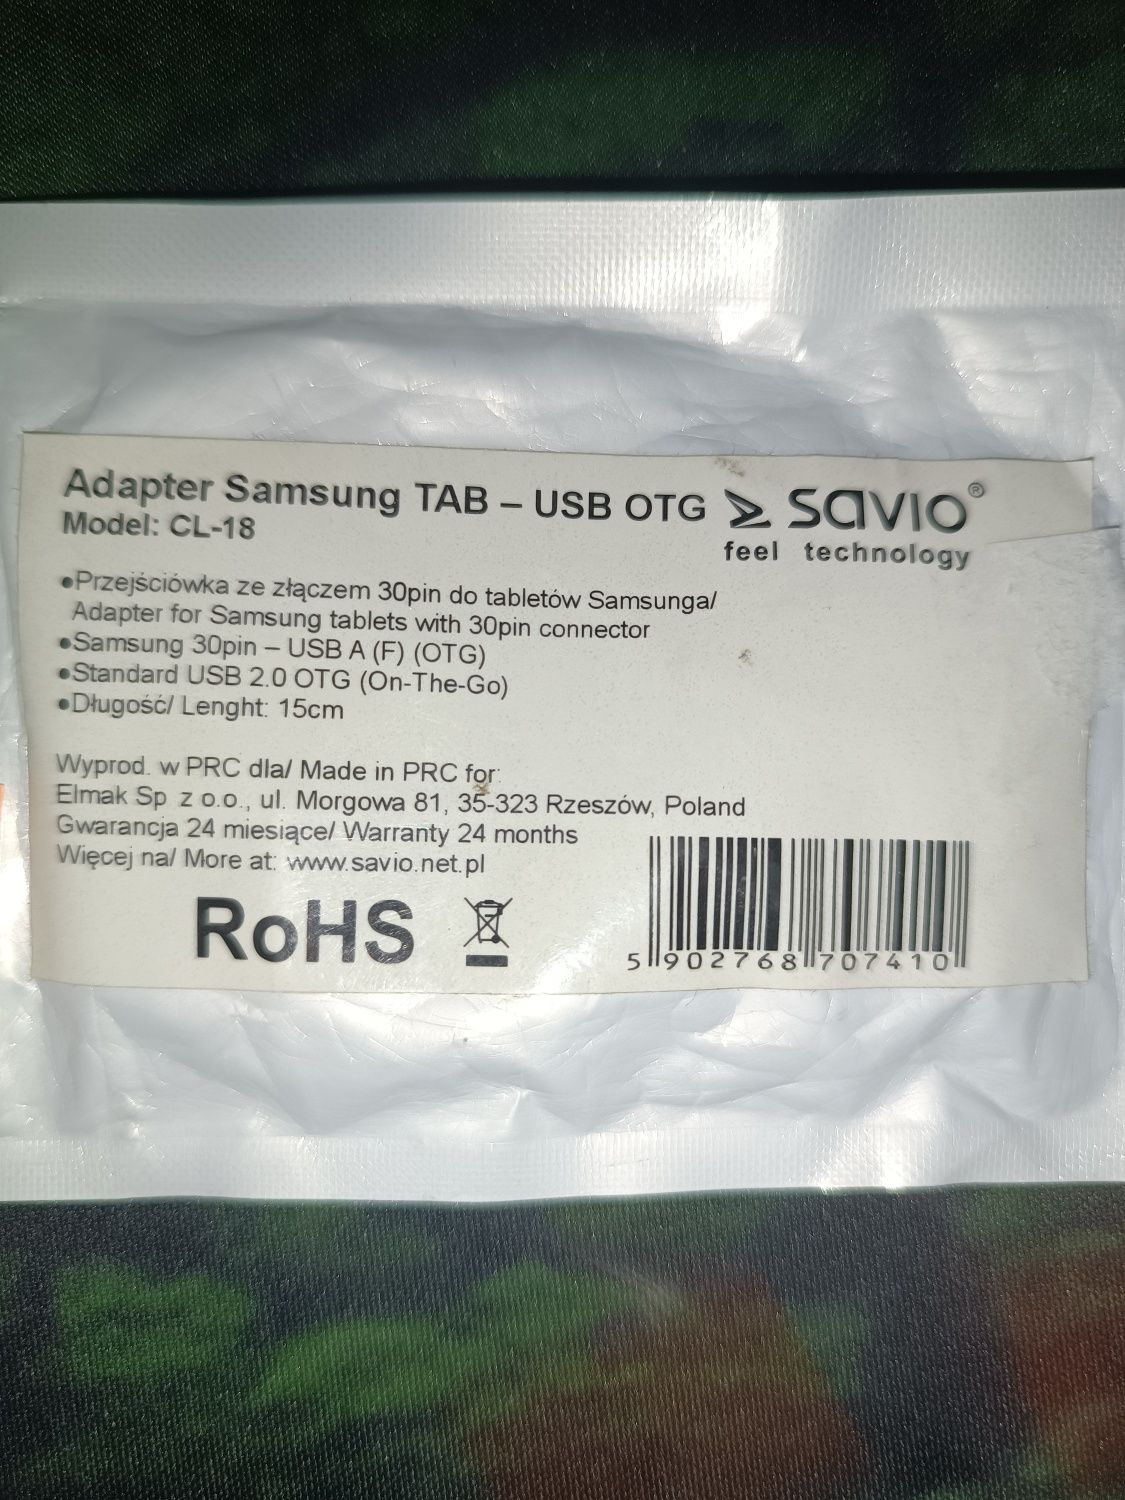 Adapter Samsung TAB-USB OTG MODEL-CL-18